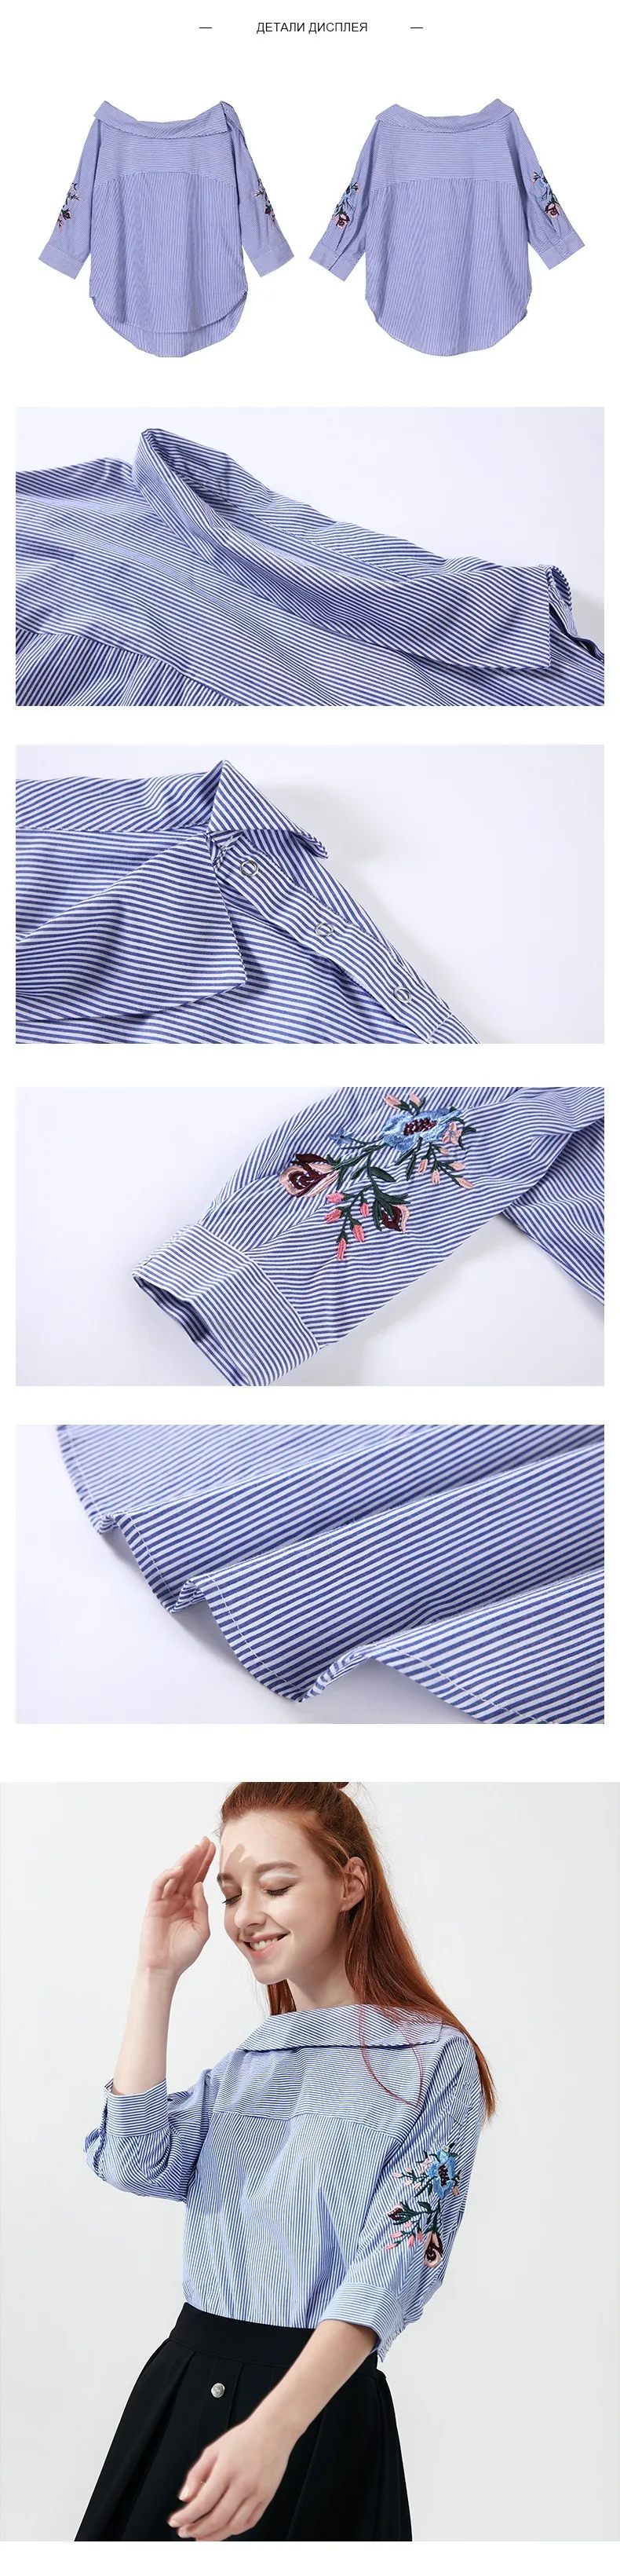 Toyouth Лето Для женщин с открытыми плечами блузка цветок вышивка в полоску три четверти рукав рубашки хлопок Повседневное Blusas Feminina S-XL